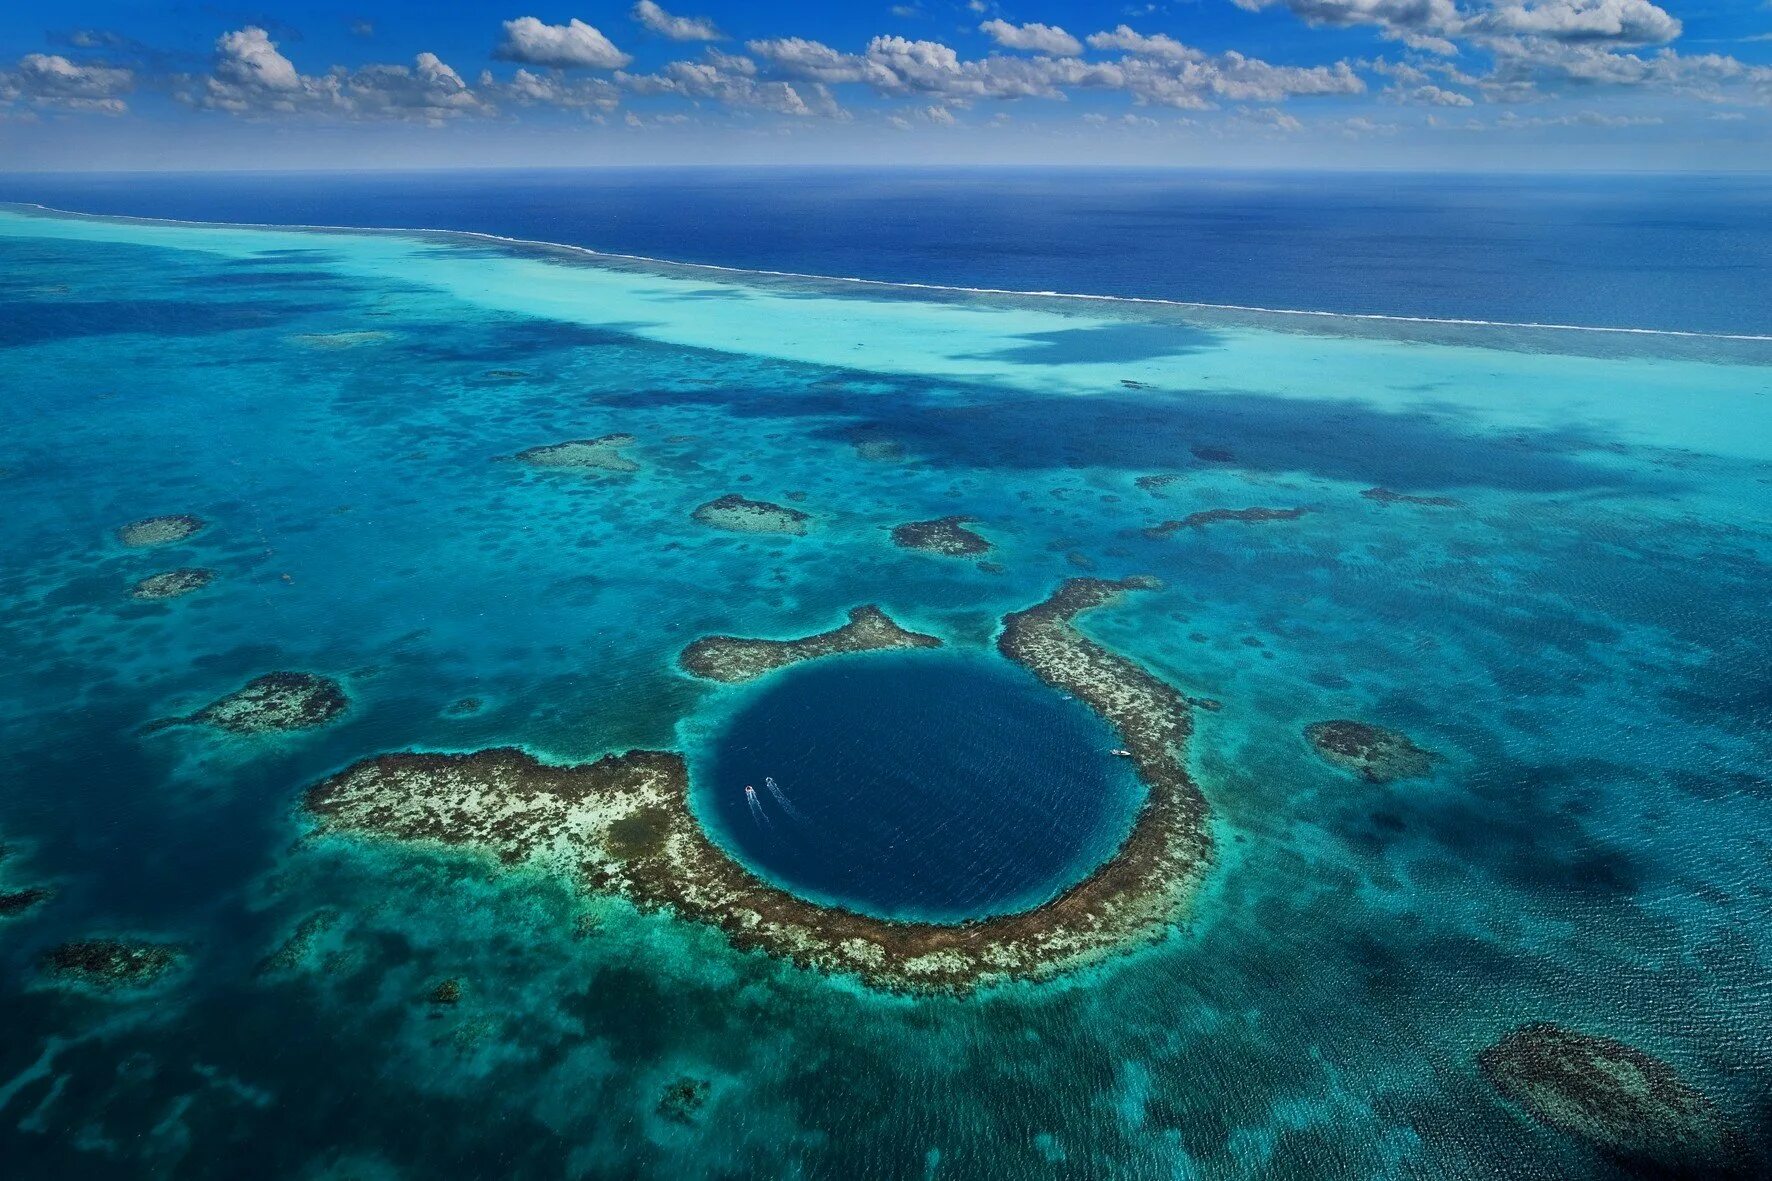 Сами больше море в мире. Большая голубая дыра, Лайтхаус-риф. Барьерный риф Белиз. Тихий океан Марианский желоб. Большая голубая дыра Белиз.